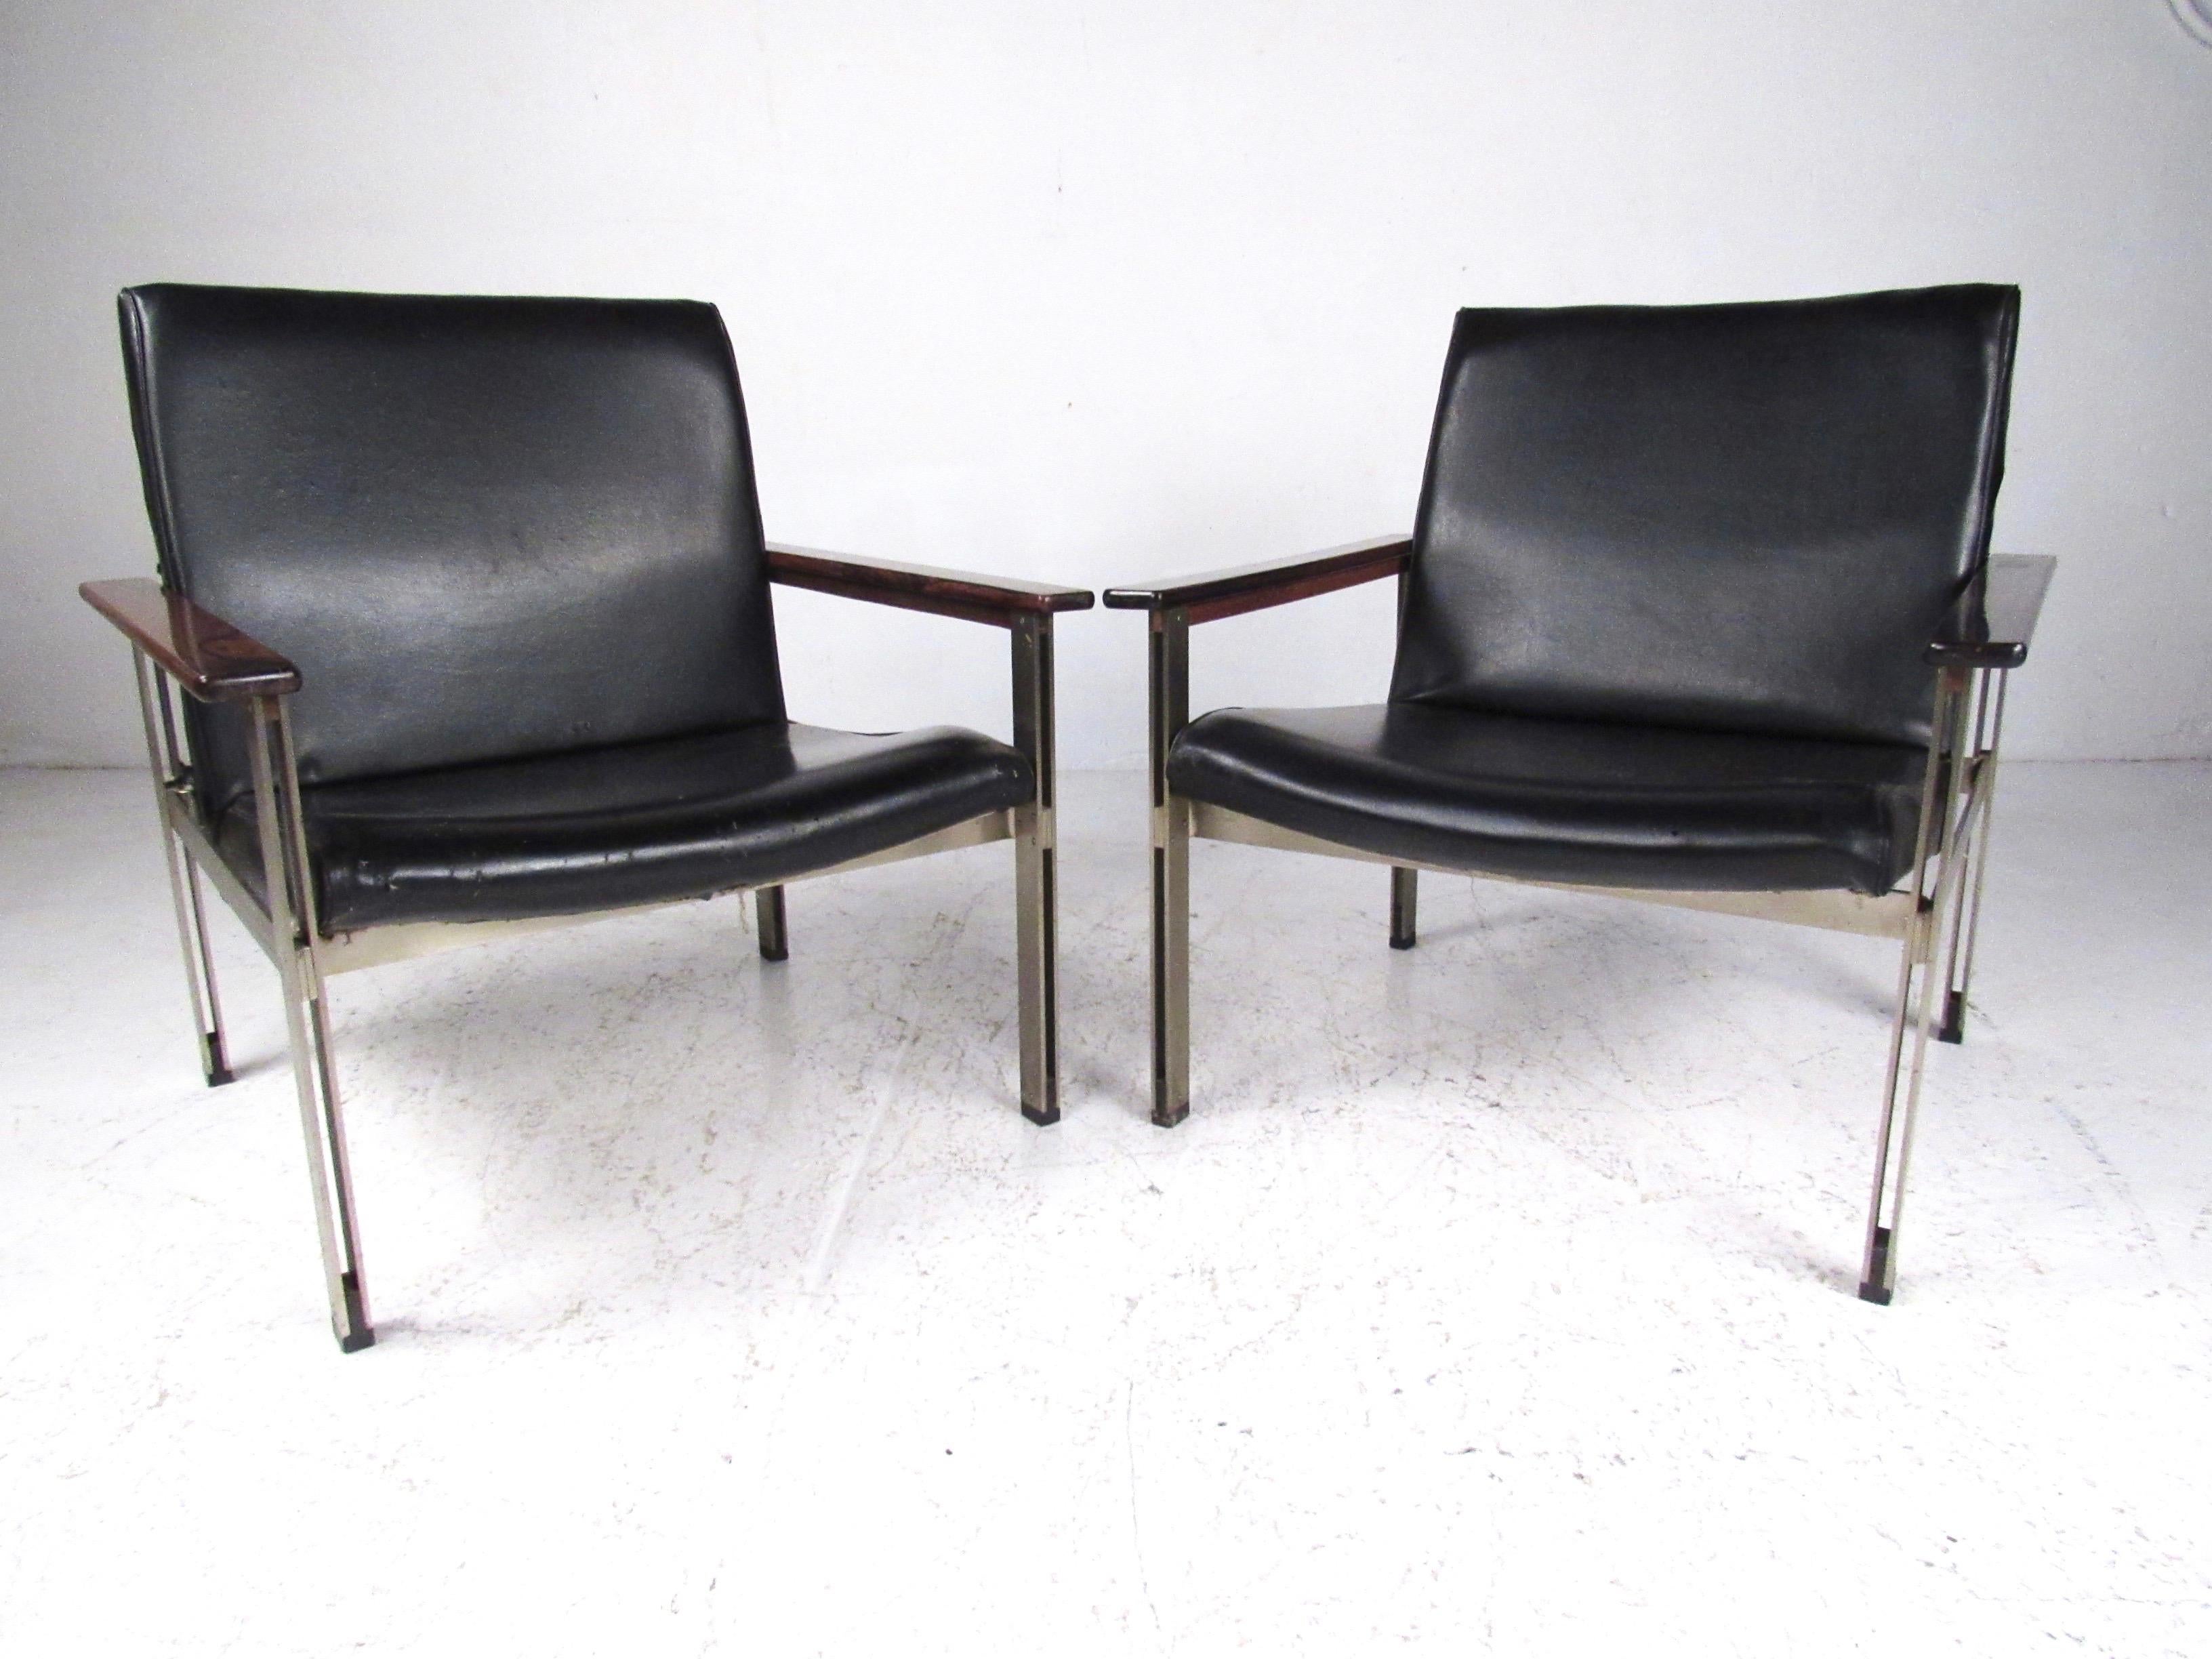 Dieses stilvolle Paar passender Loungesessel zeigt italienisches modernes Design aus der Mitte des Jahrhunderts mit Armlehnen aus Rosenholz und Gestellen aus Metall. Mit seinem auffälligen Stil und den einzigartig geformten Rückenlehnen ist dieses